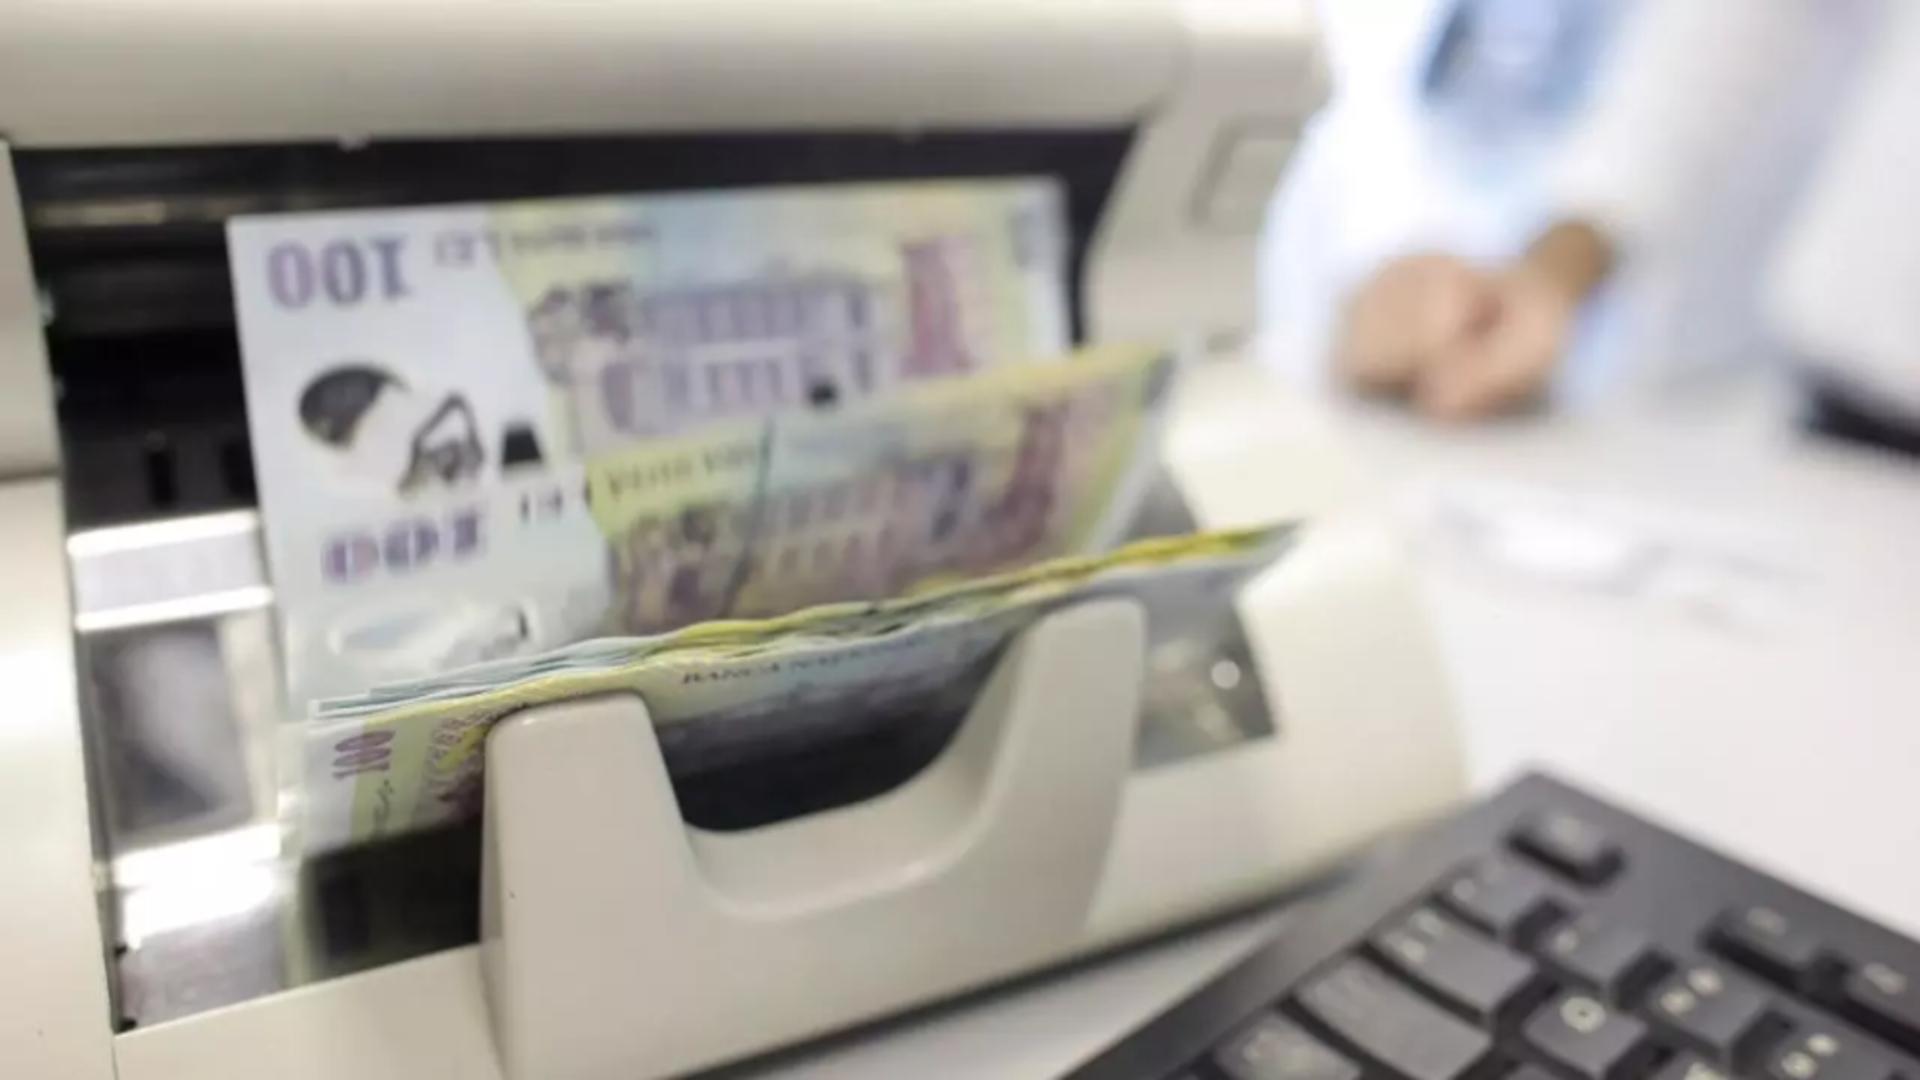 O bancă importantă, cu aproape jumătate de milion de clienți, a fost înghițită de liderul pieții bancare din România. Consiliul Concurenței a autorizat tranzacția